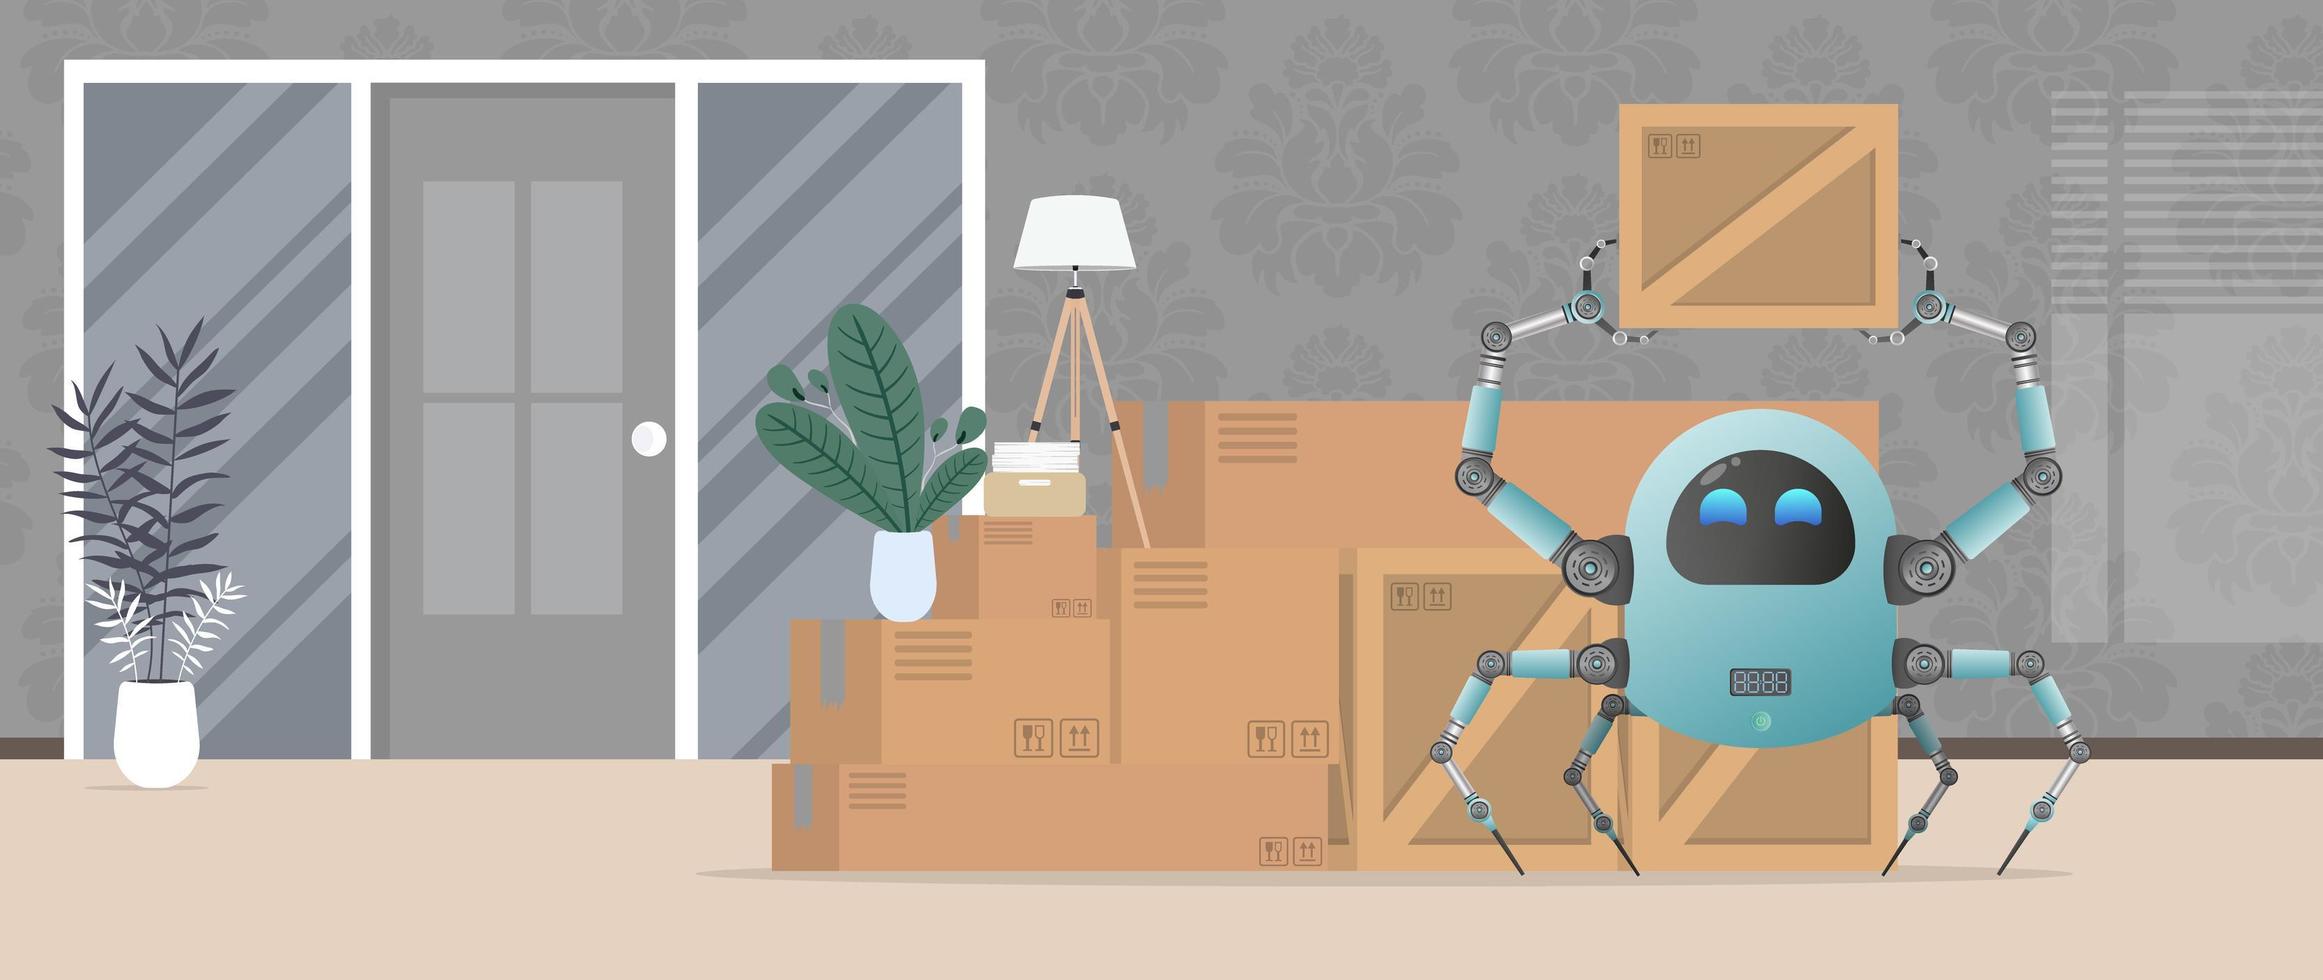 mudarse de casa u oficina. un pequeño robot futurista sostiene una caja. estilo de dibujos animados vector